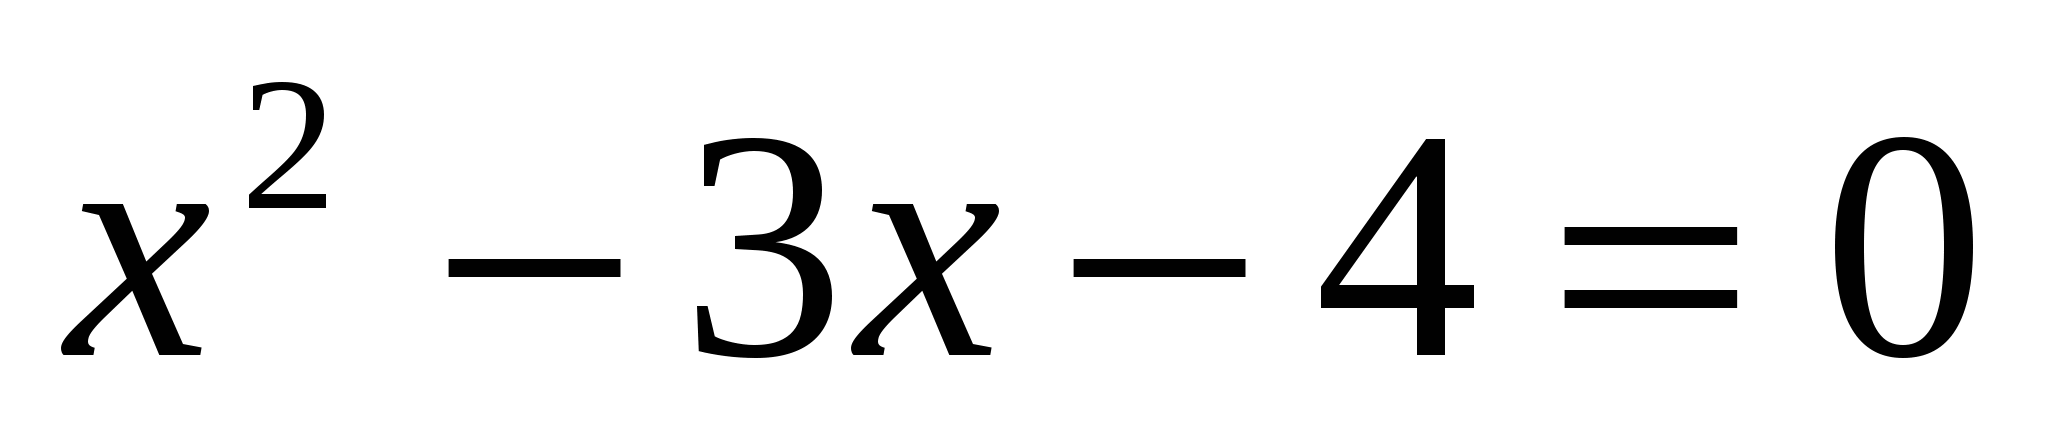 План-конспект урока по алгебре на тему Решение квадратных уравнений. Разложение квадратного трехчлена на множители (8 класс)